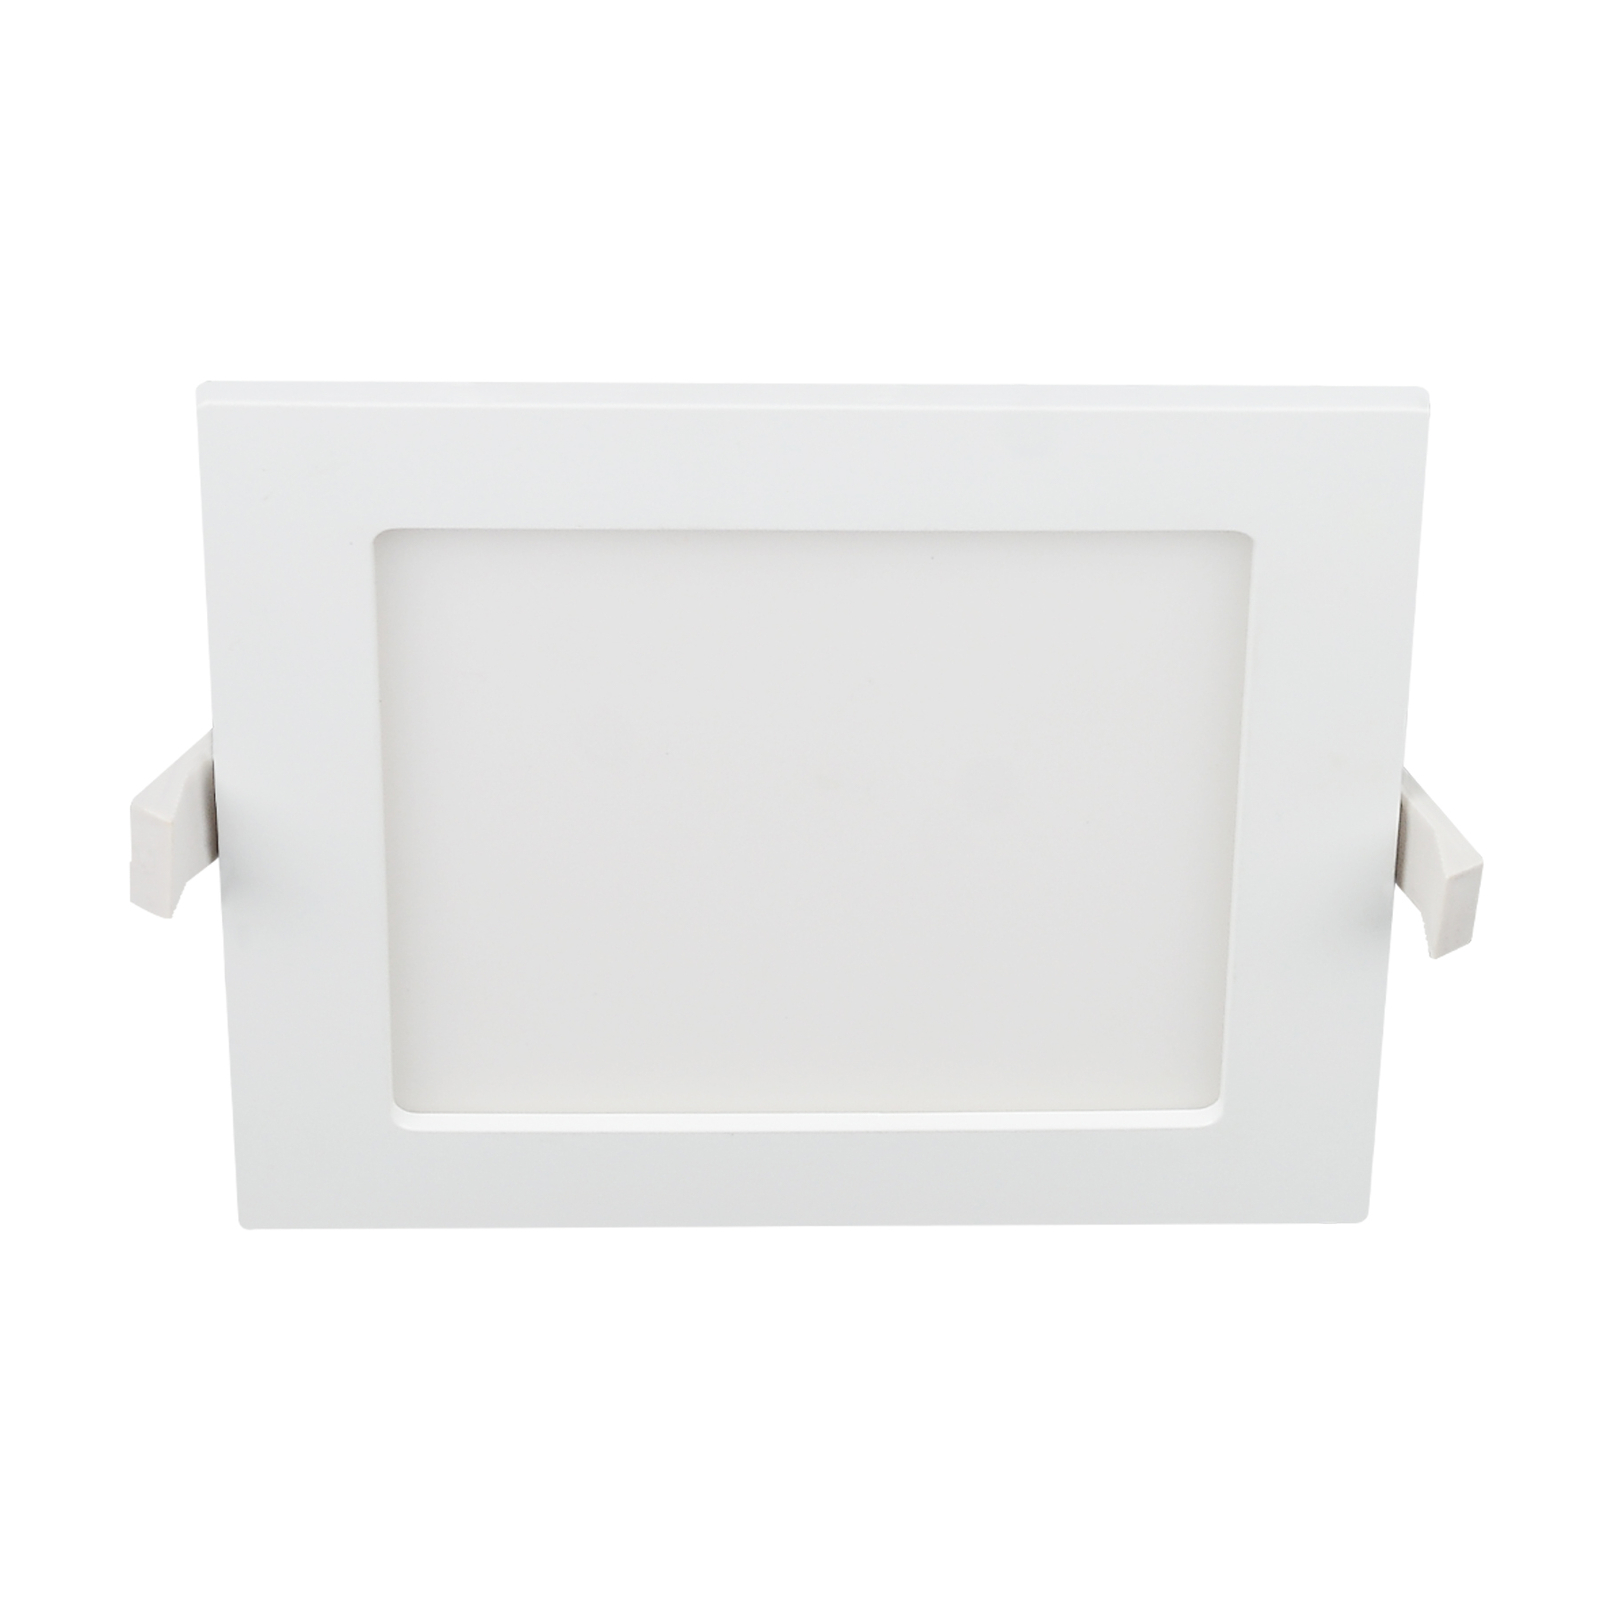 Prios Helina LED-Einbaulampe, weiß, 22 cm, 24 W